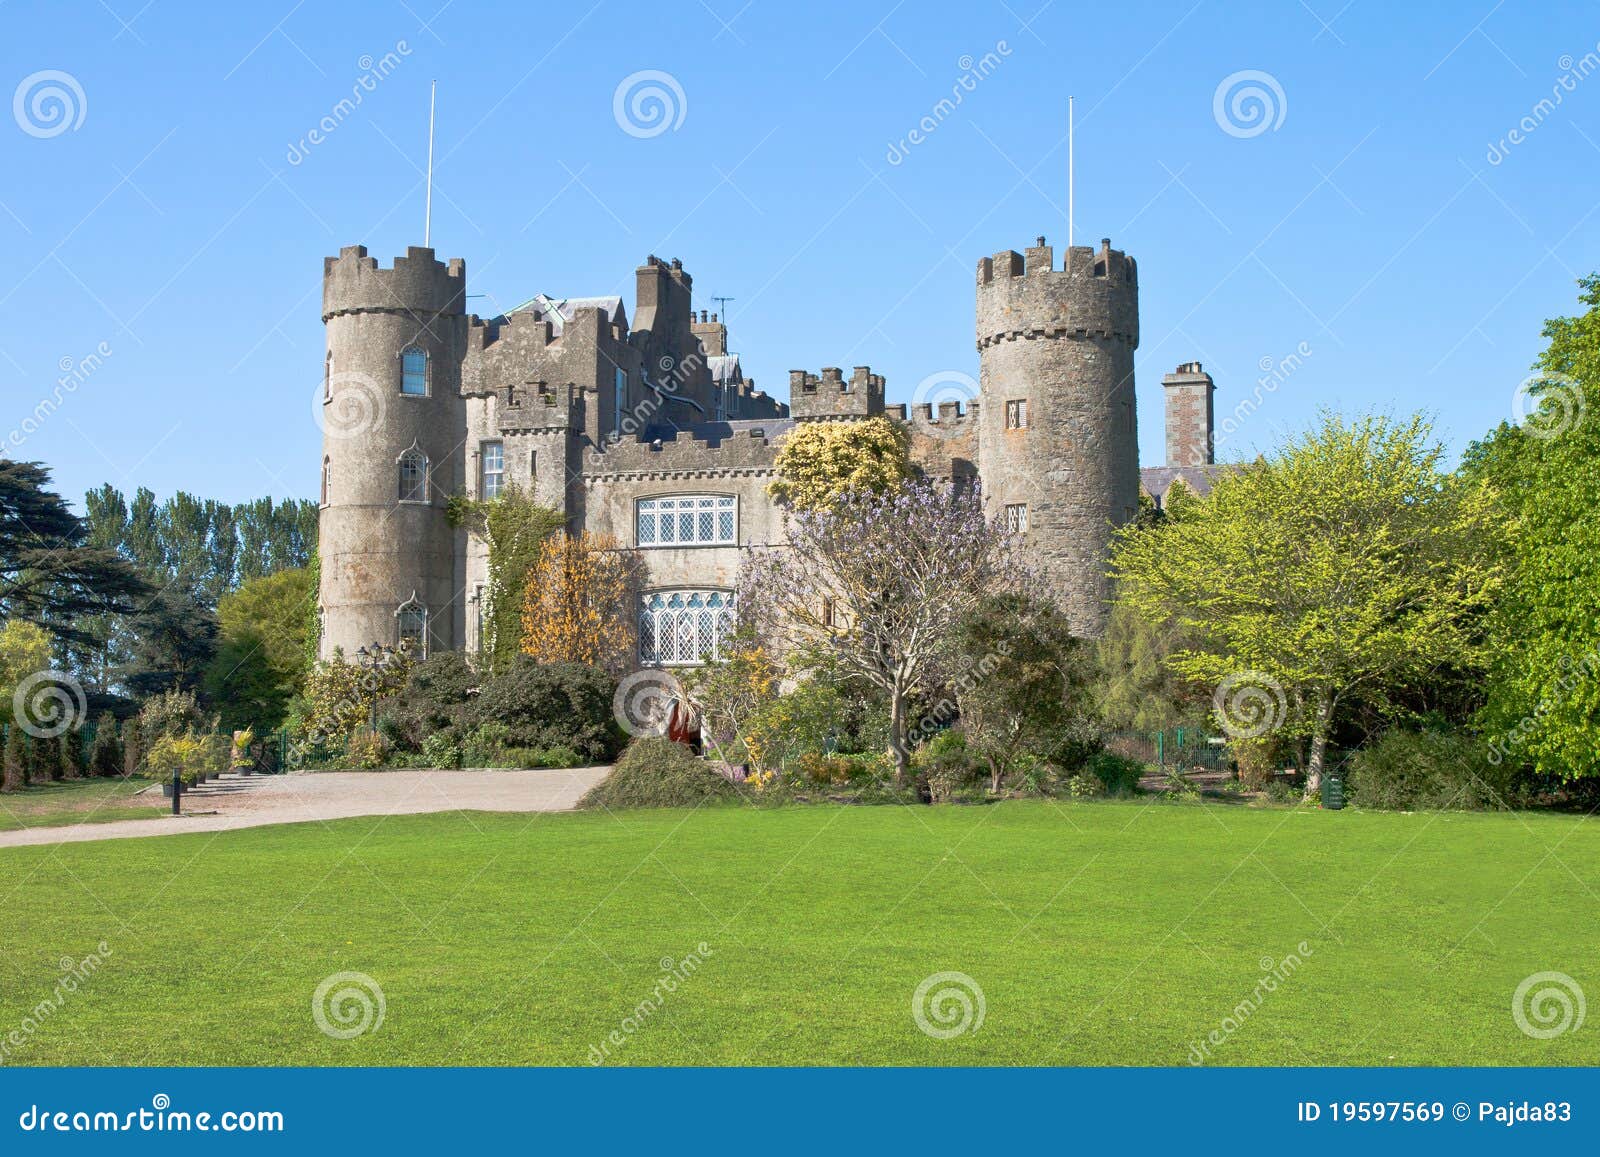 malahide castle in dublin, ireland.